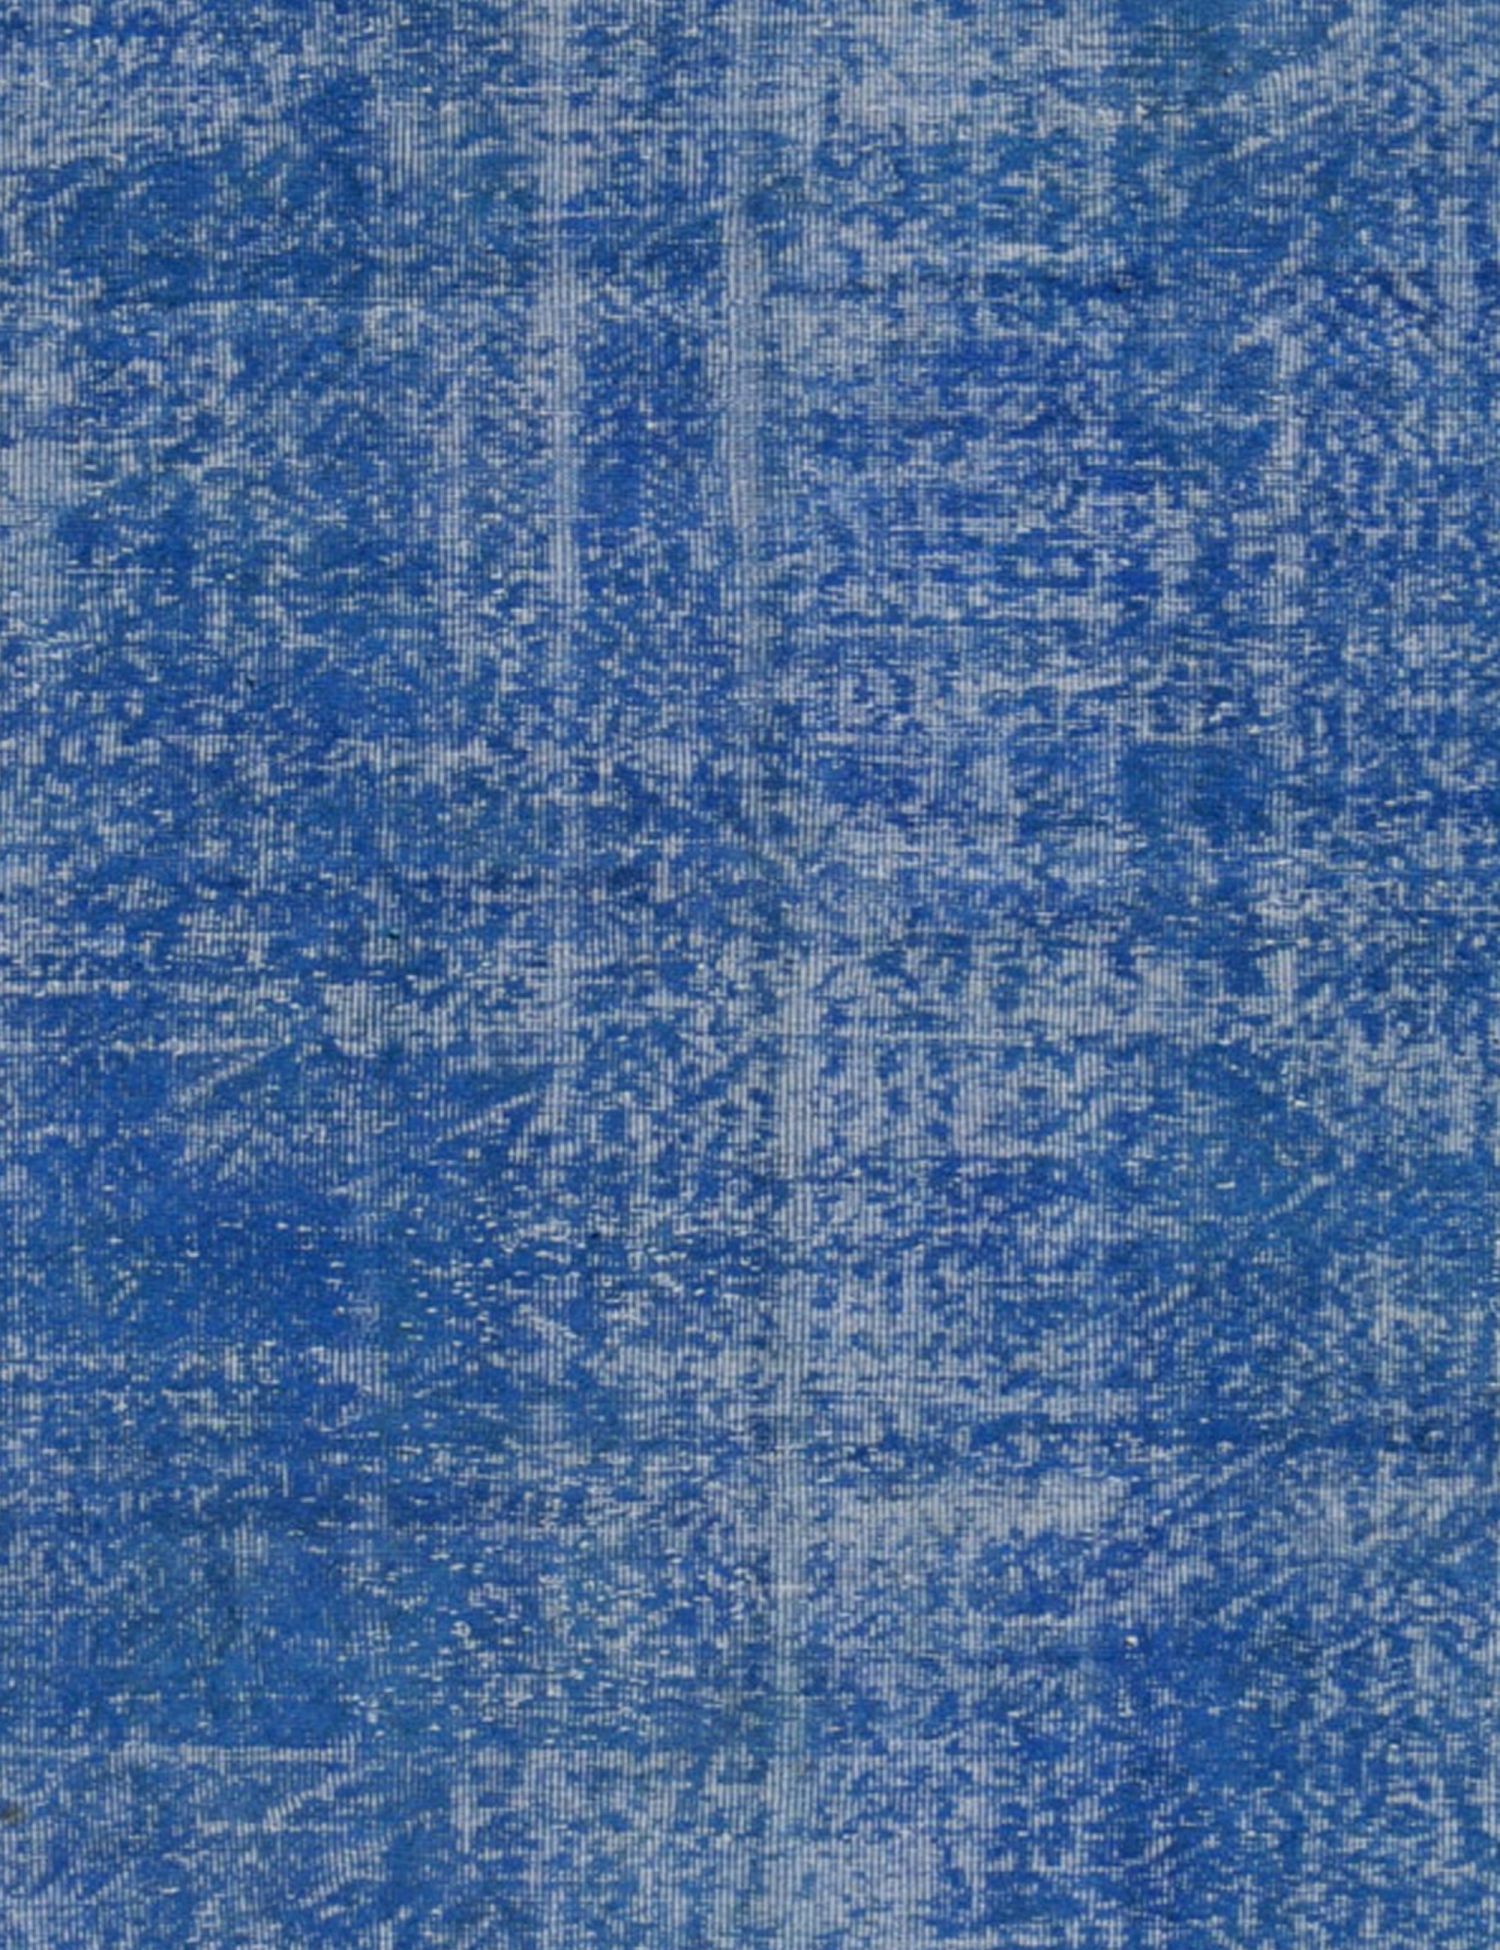 Vintage Teppich  blau <br/>163 x 163 cm